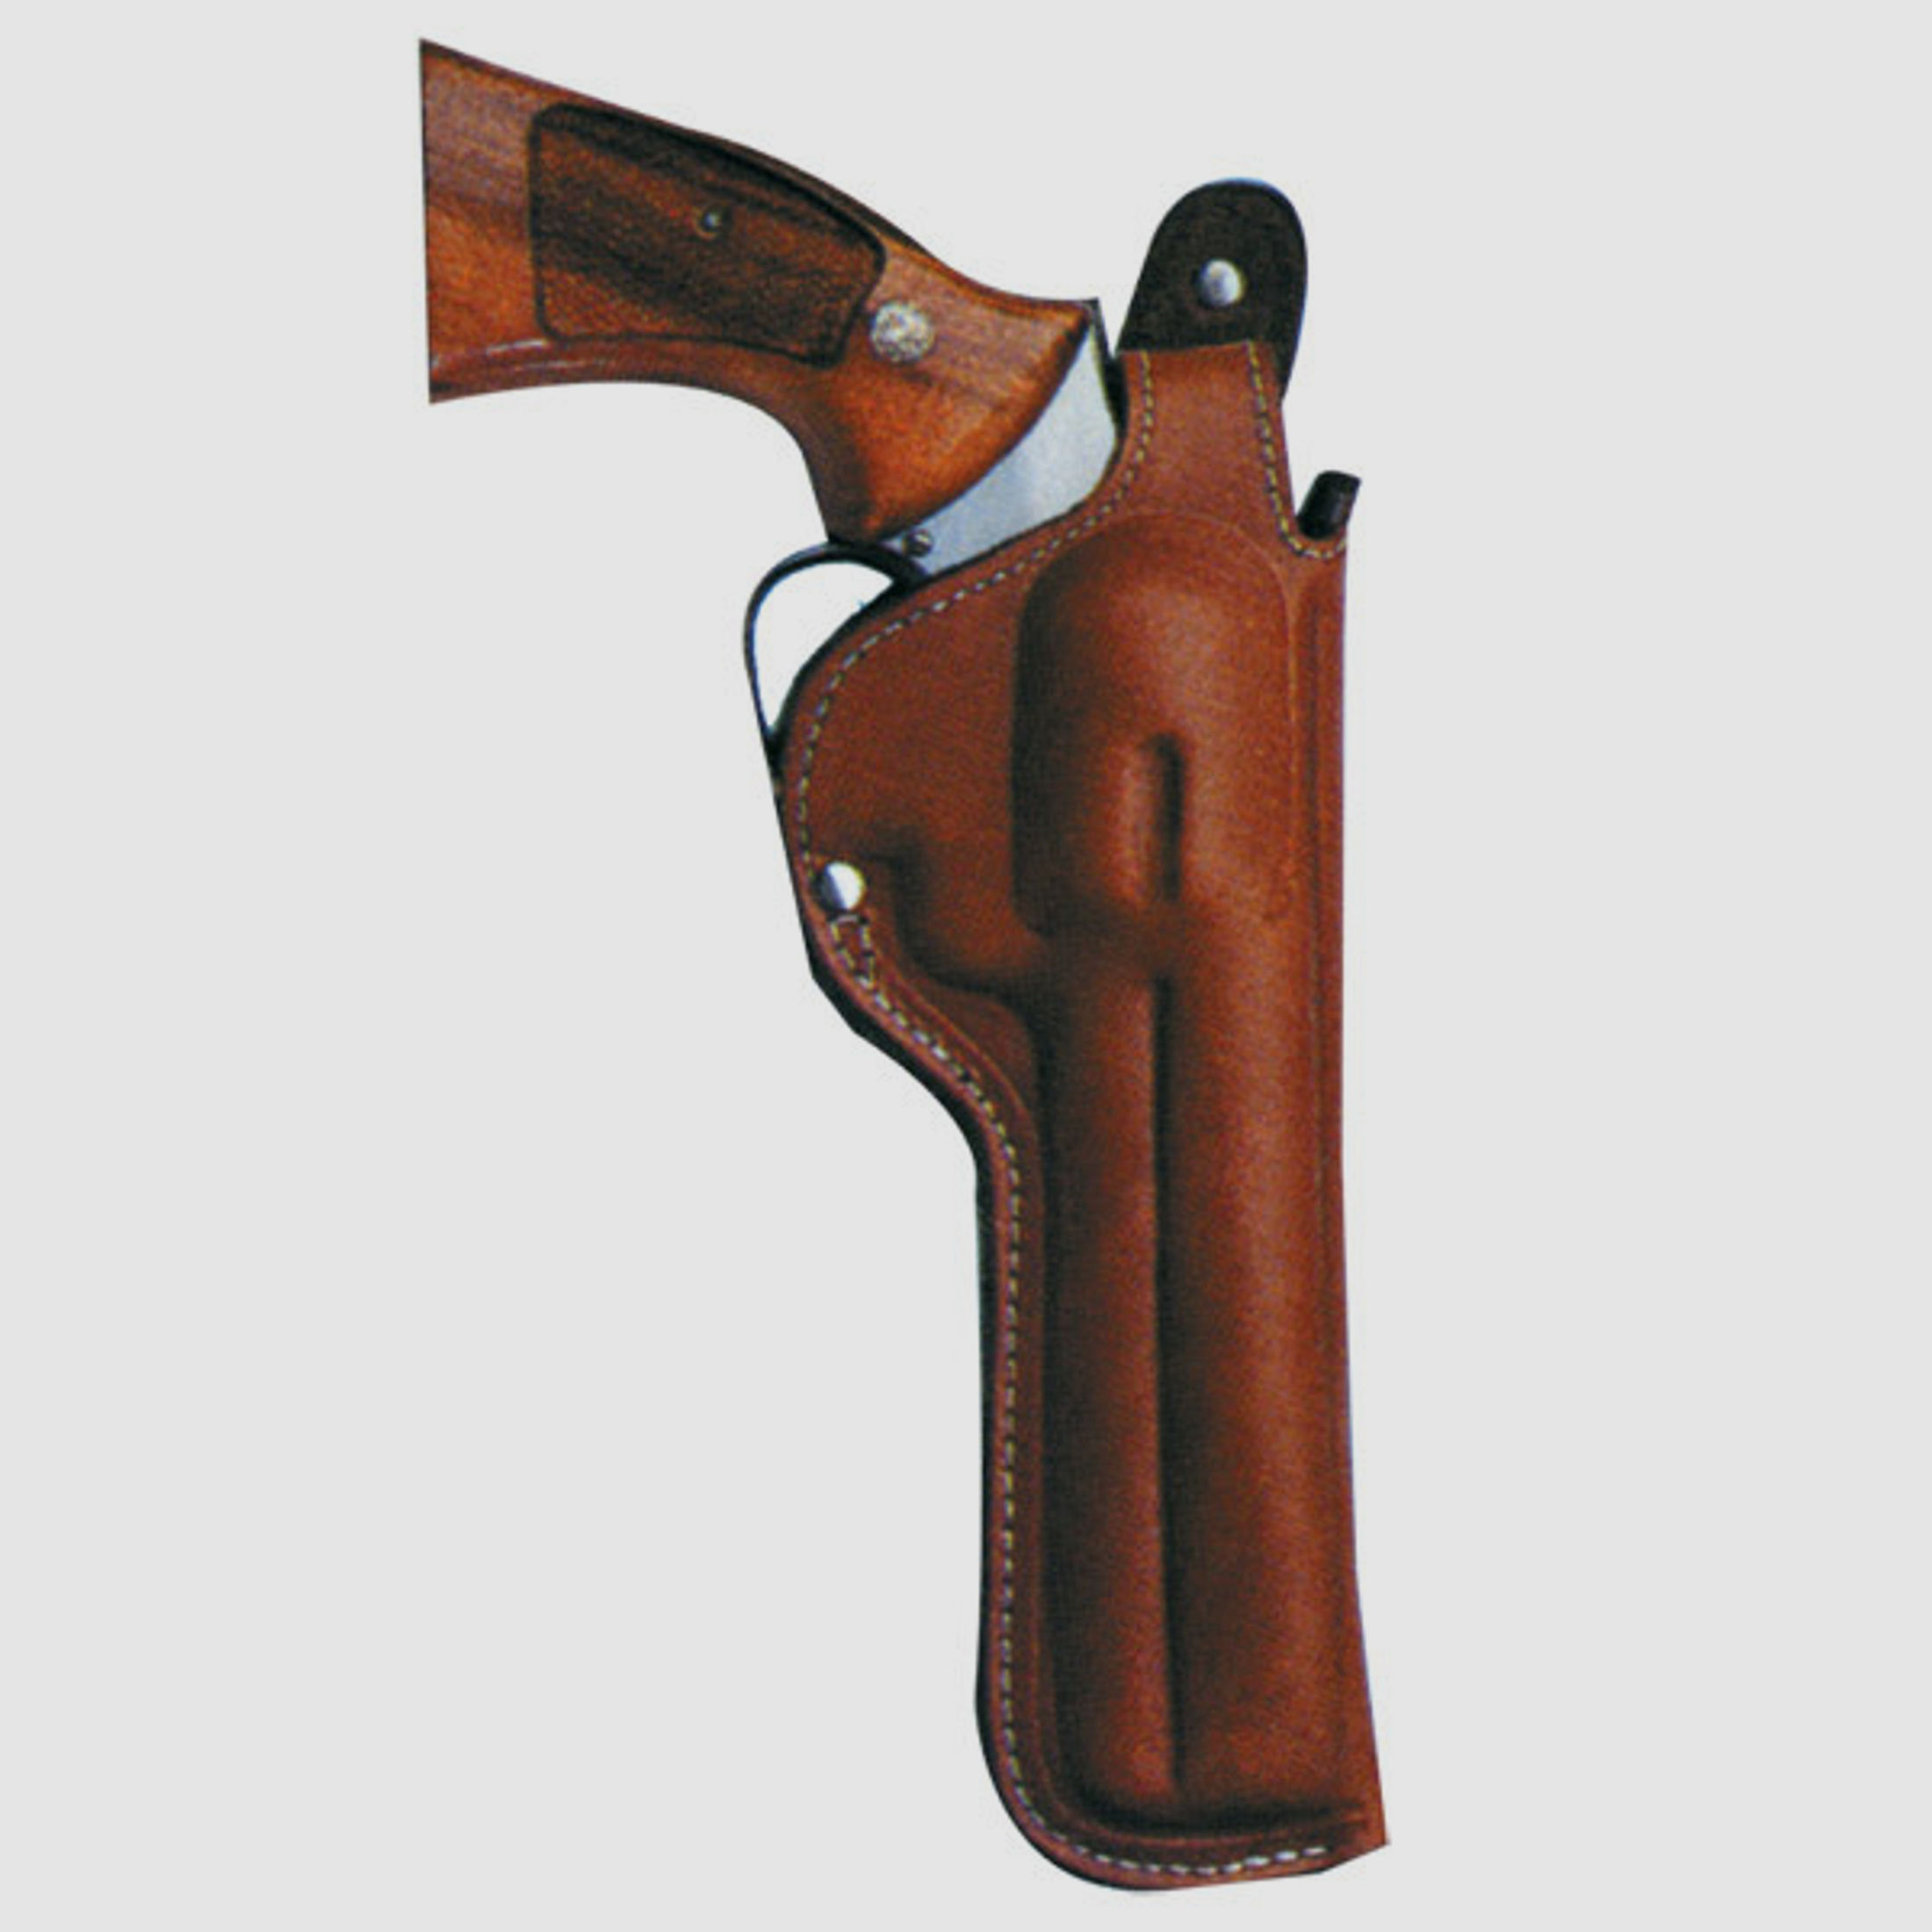 Gürtelholster TOP GUN für Revolver 4" L-Frame S&W 586/617/686,Ruger KGP/GP-141/SP 101,Taurus 66/627/869,HW 357,Colt King Cobra/Python,Dan Wesson,Korth